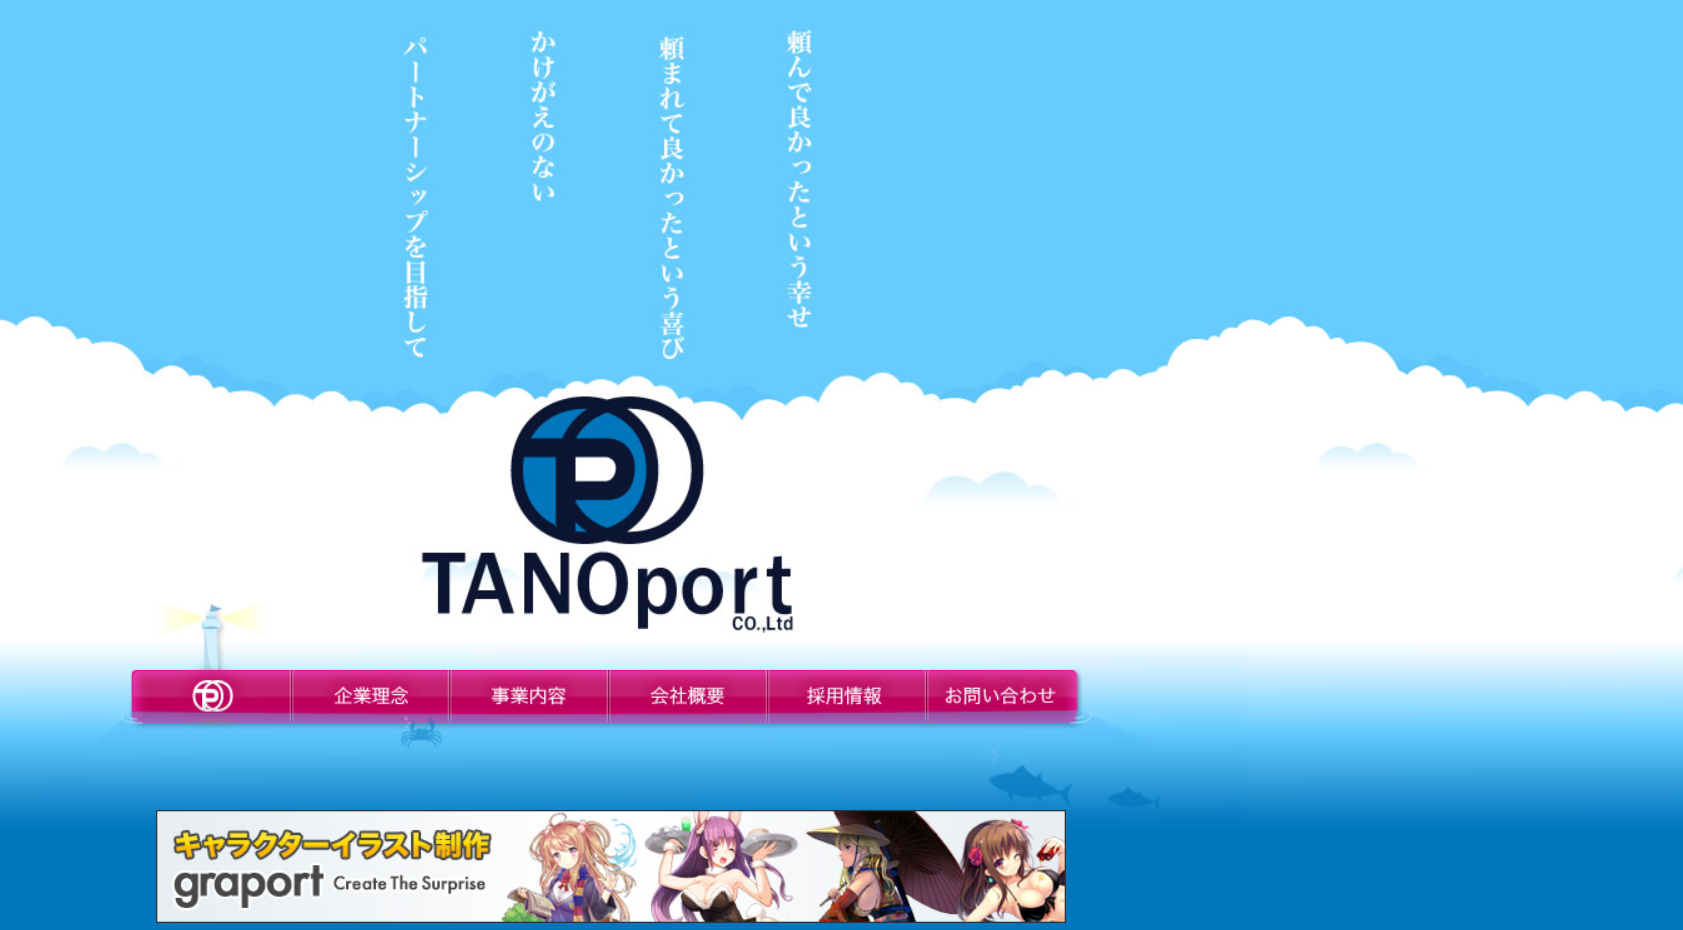 株式会社 TANOportのTANOportサービス